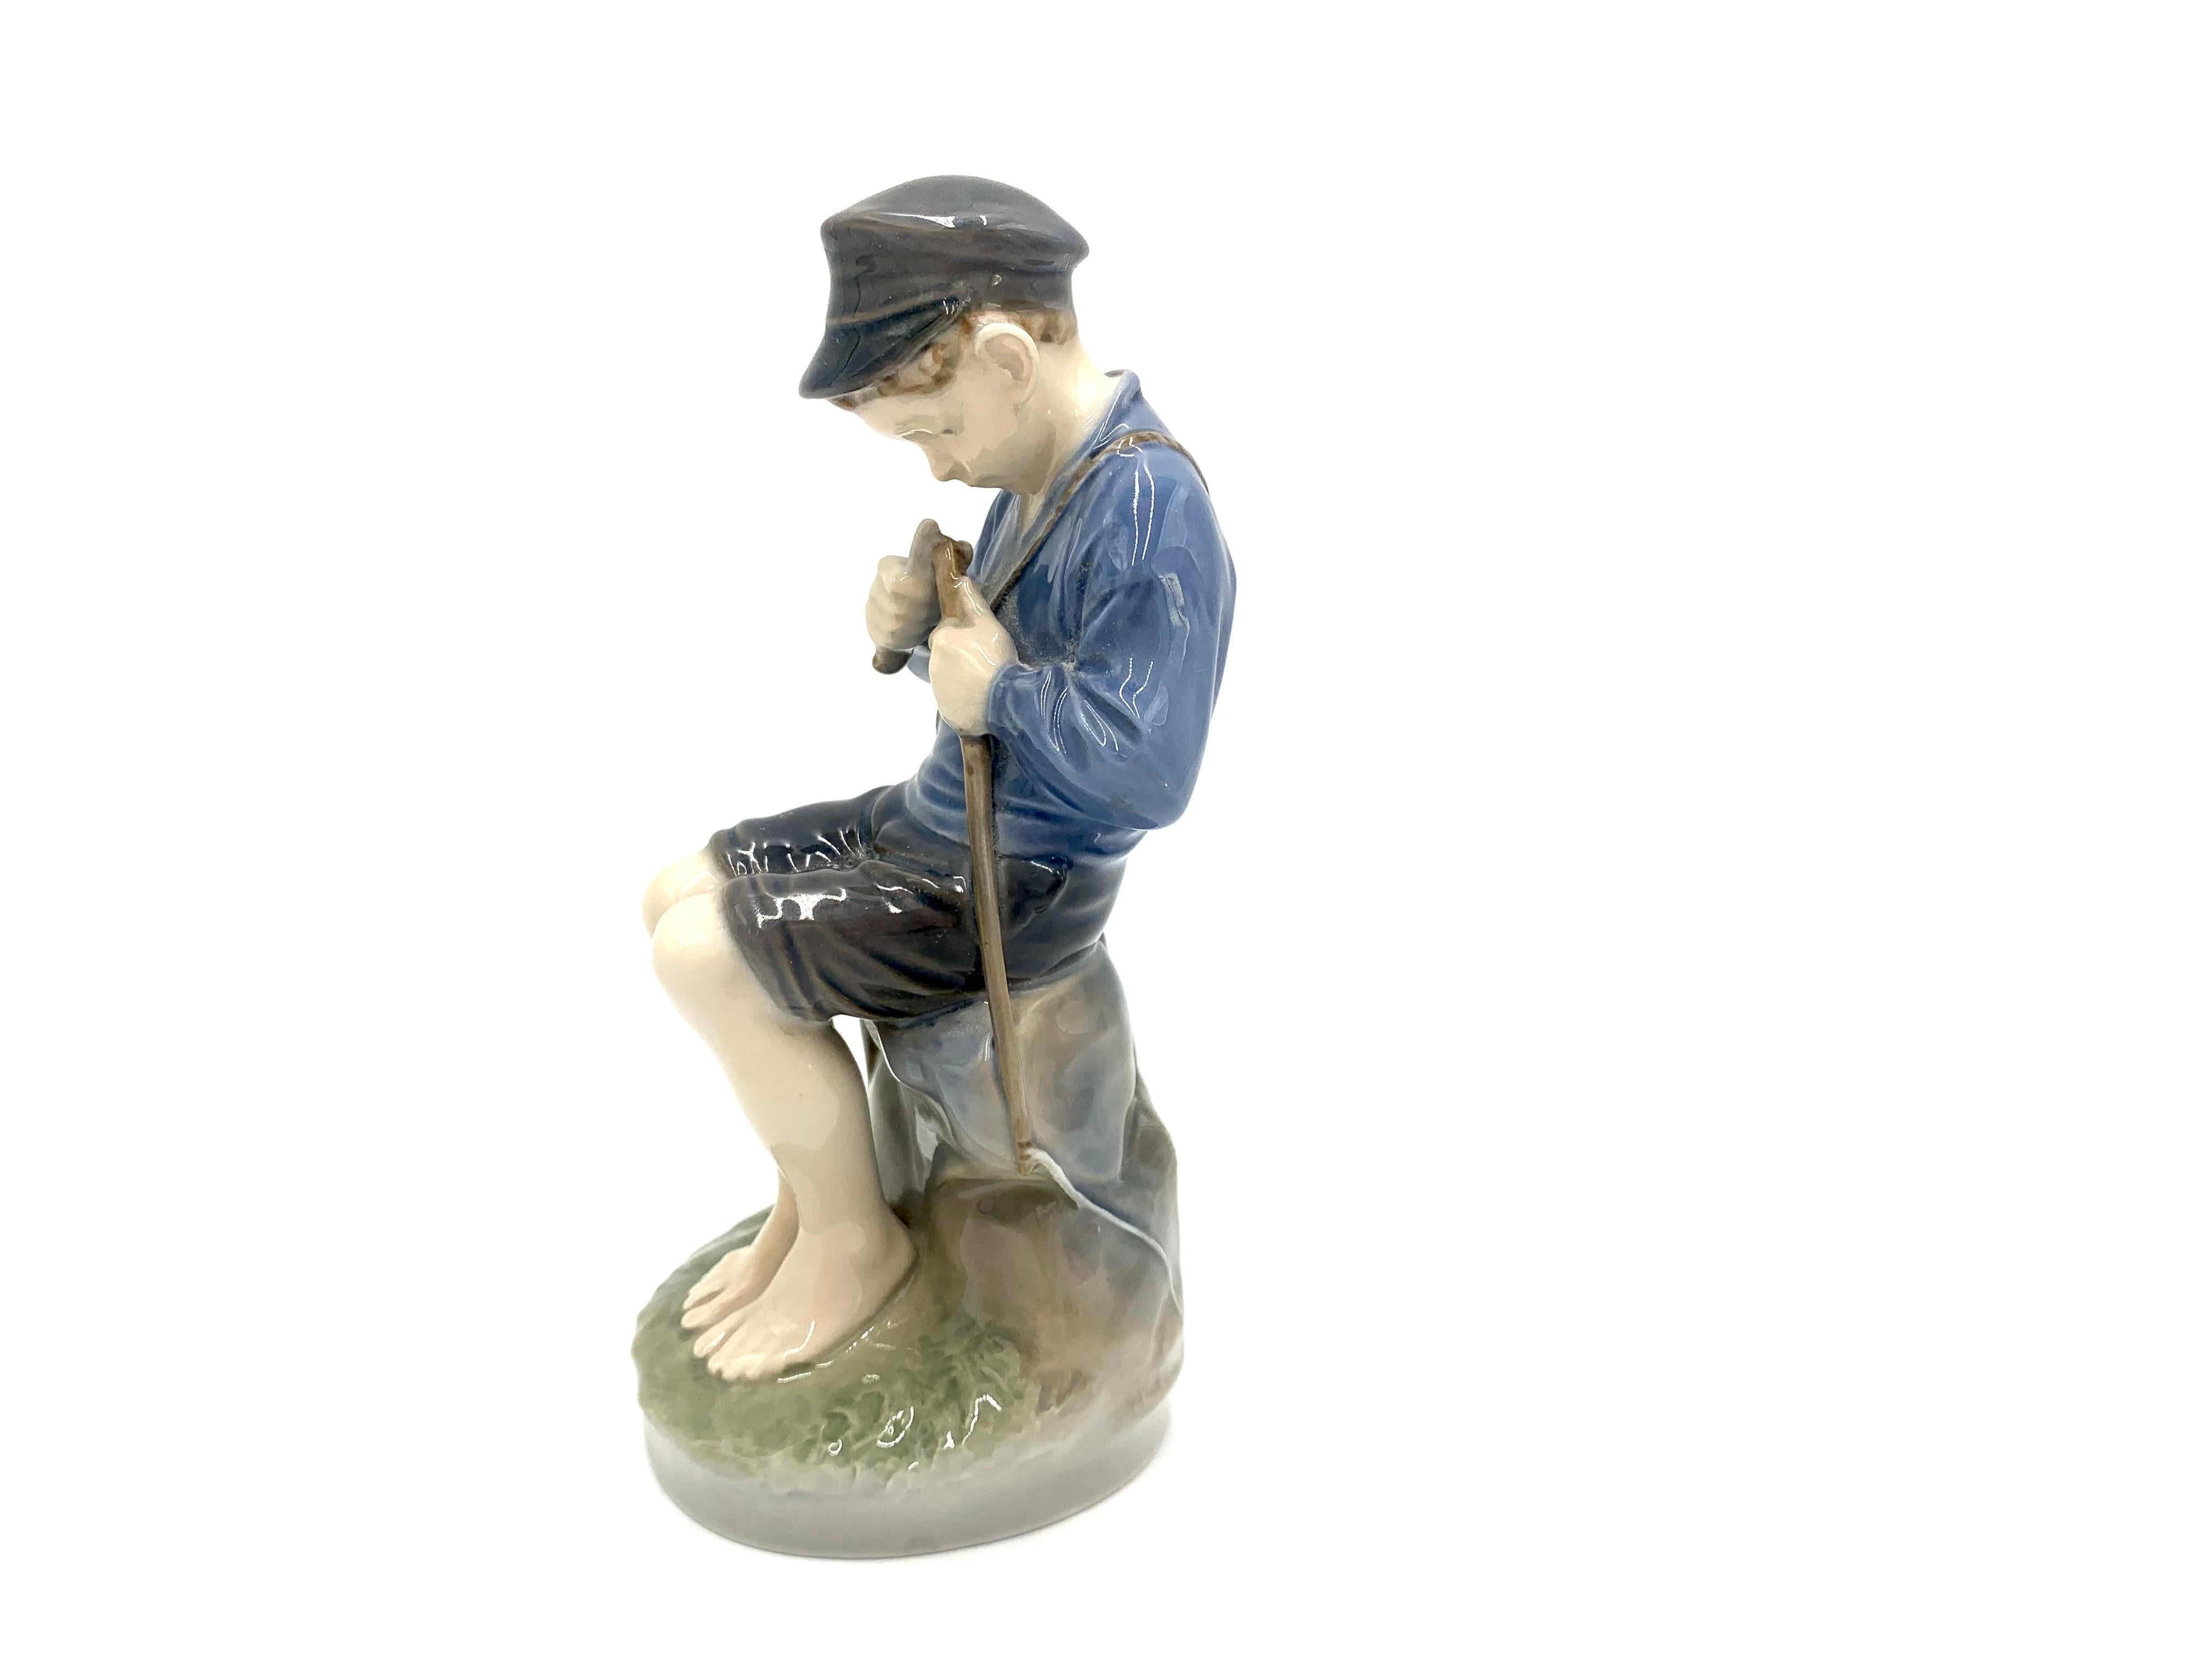 Figurine en porcelaine représentant un garçon en train d'ébrécher un bâton

Fabriqué au Danemark par la manufacture Royal Copenhagen

Fabriqué dans les années 1960.

Numéro de modèle 905

Très bon état, aucun dommage.

Dimensions : hauteur